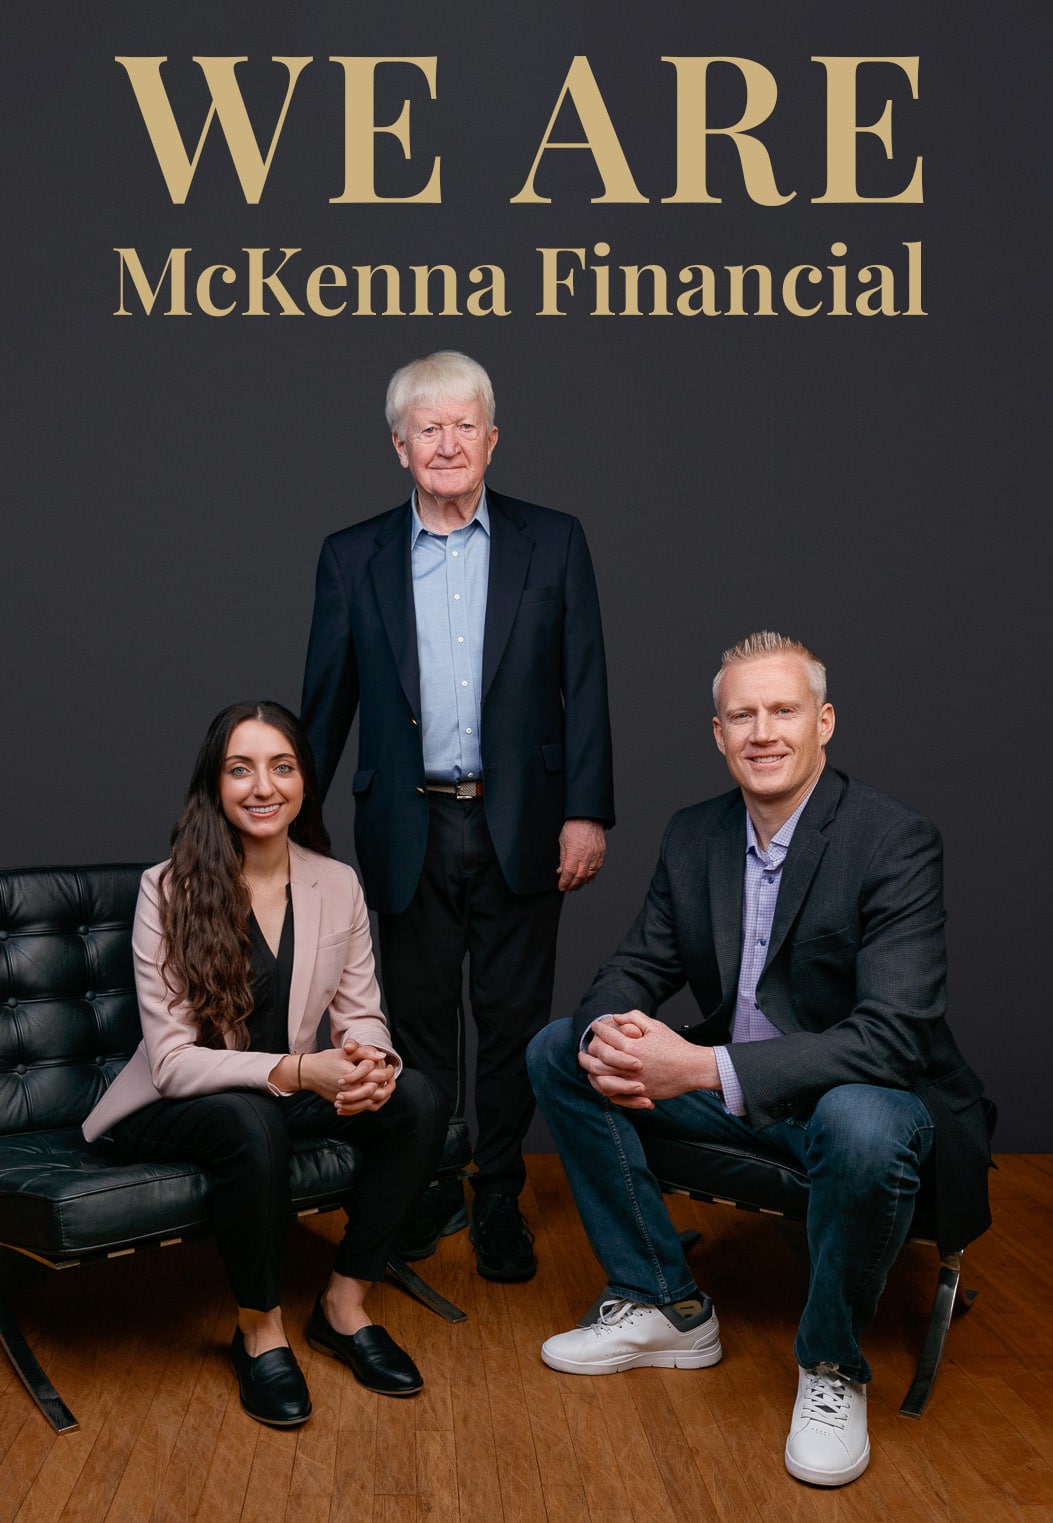 We Are McKenna Financial